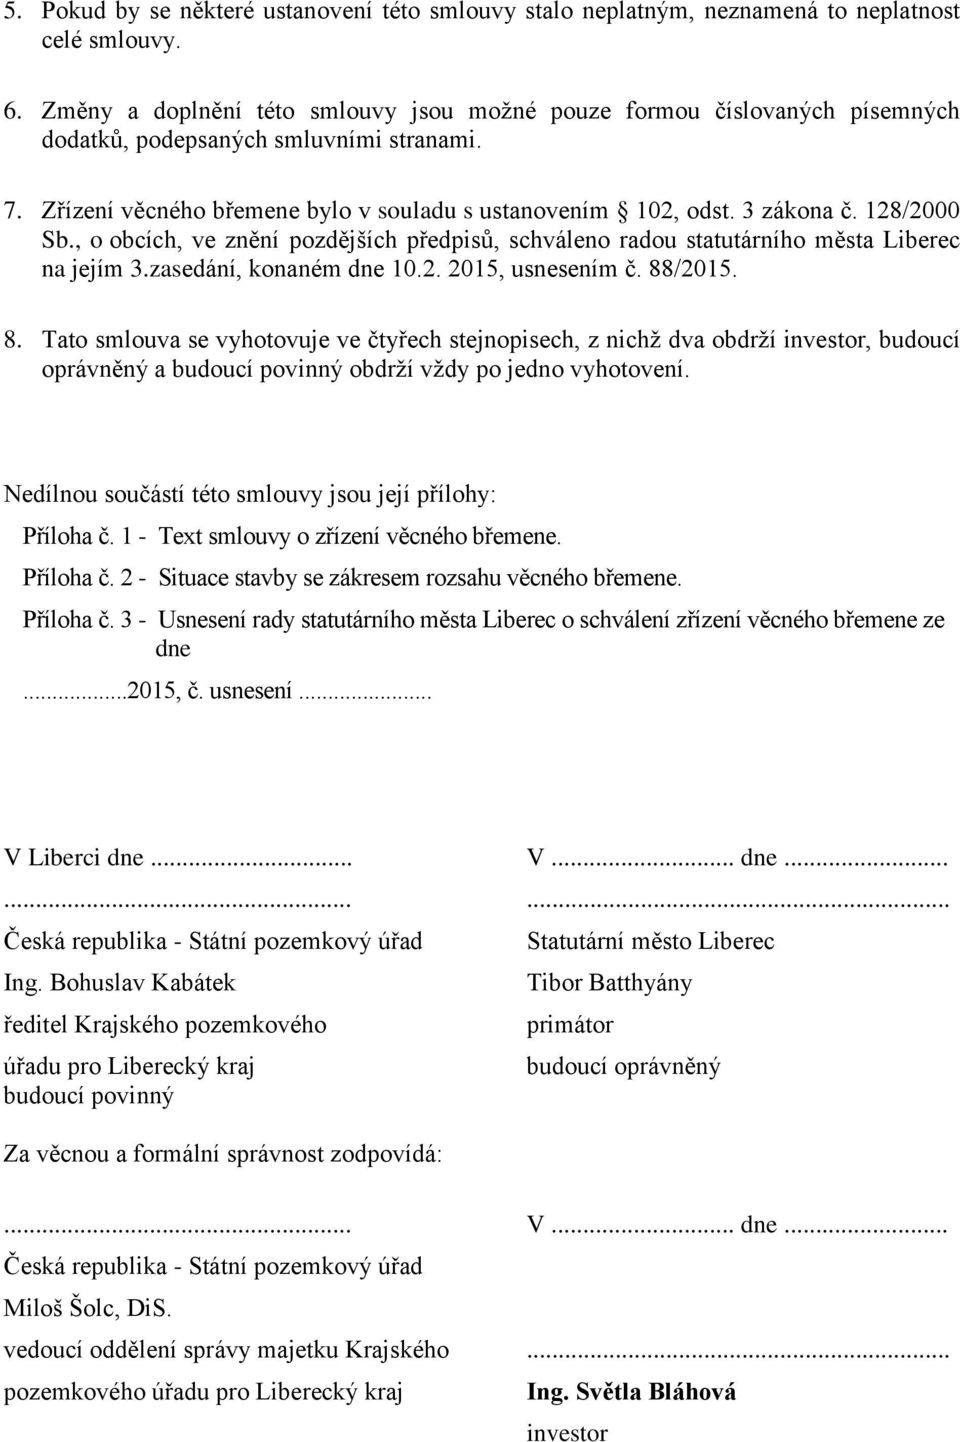 128/2000 Sb., o obcích, ve znění pozdějších předpisů, schváleno radou statutárního města Liberec na jejím 3.zasedání, konaném dne 10.2. 2015, usnesením č. 88